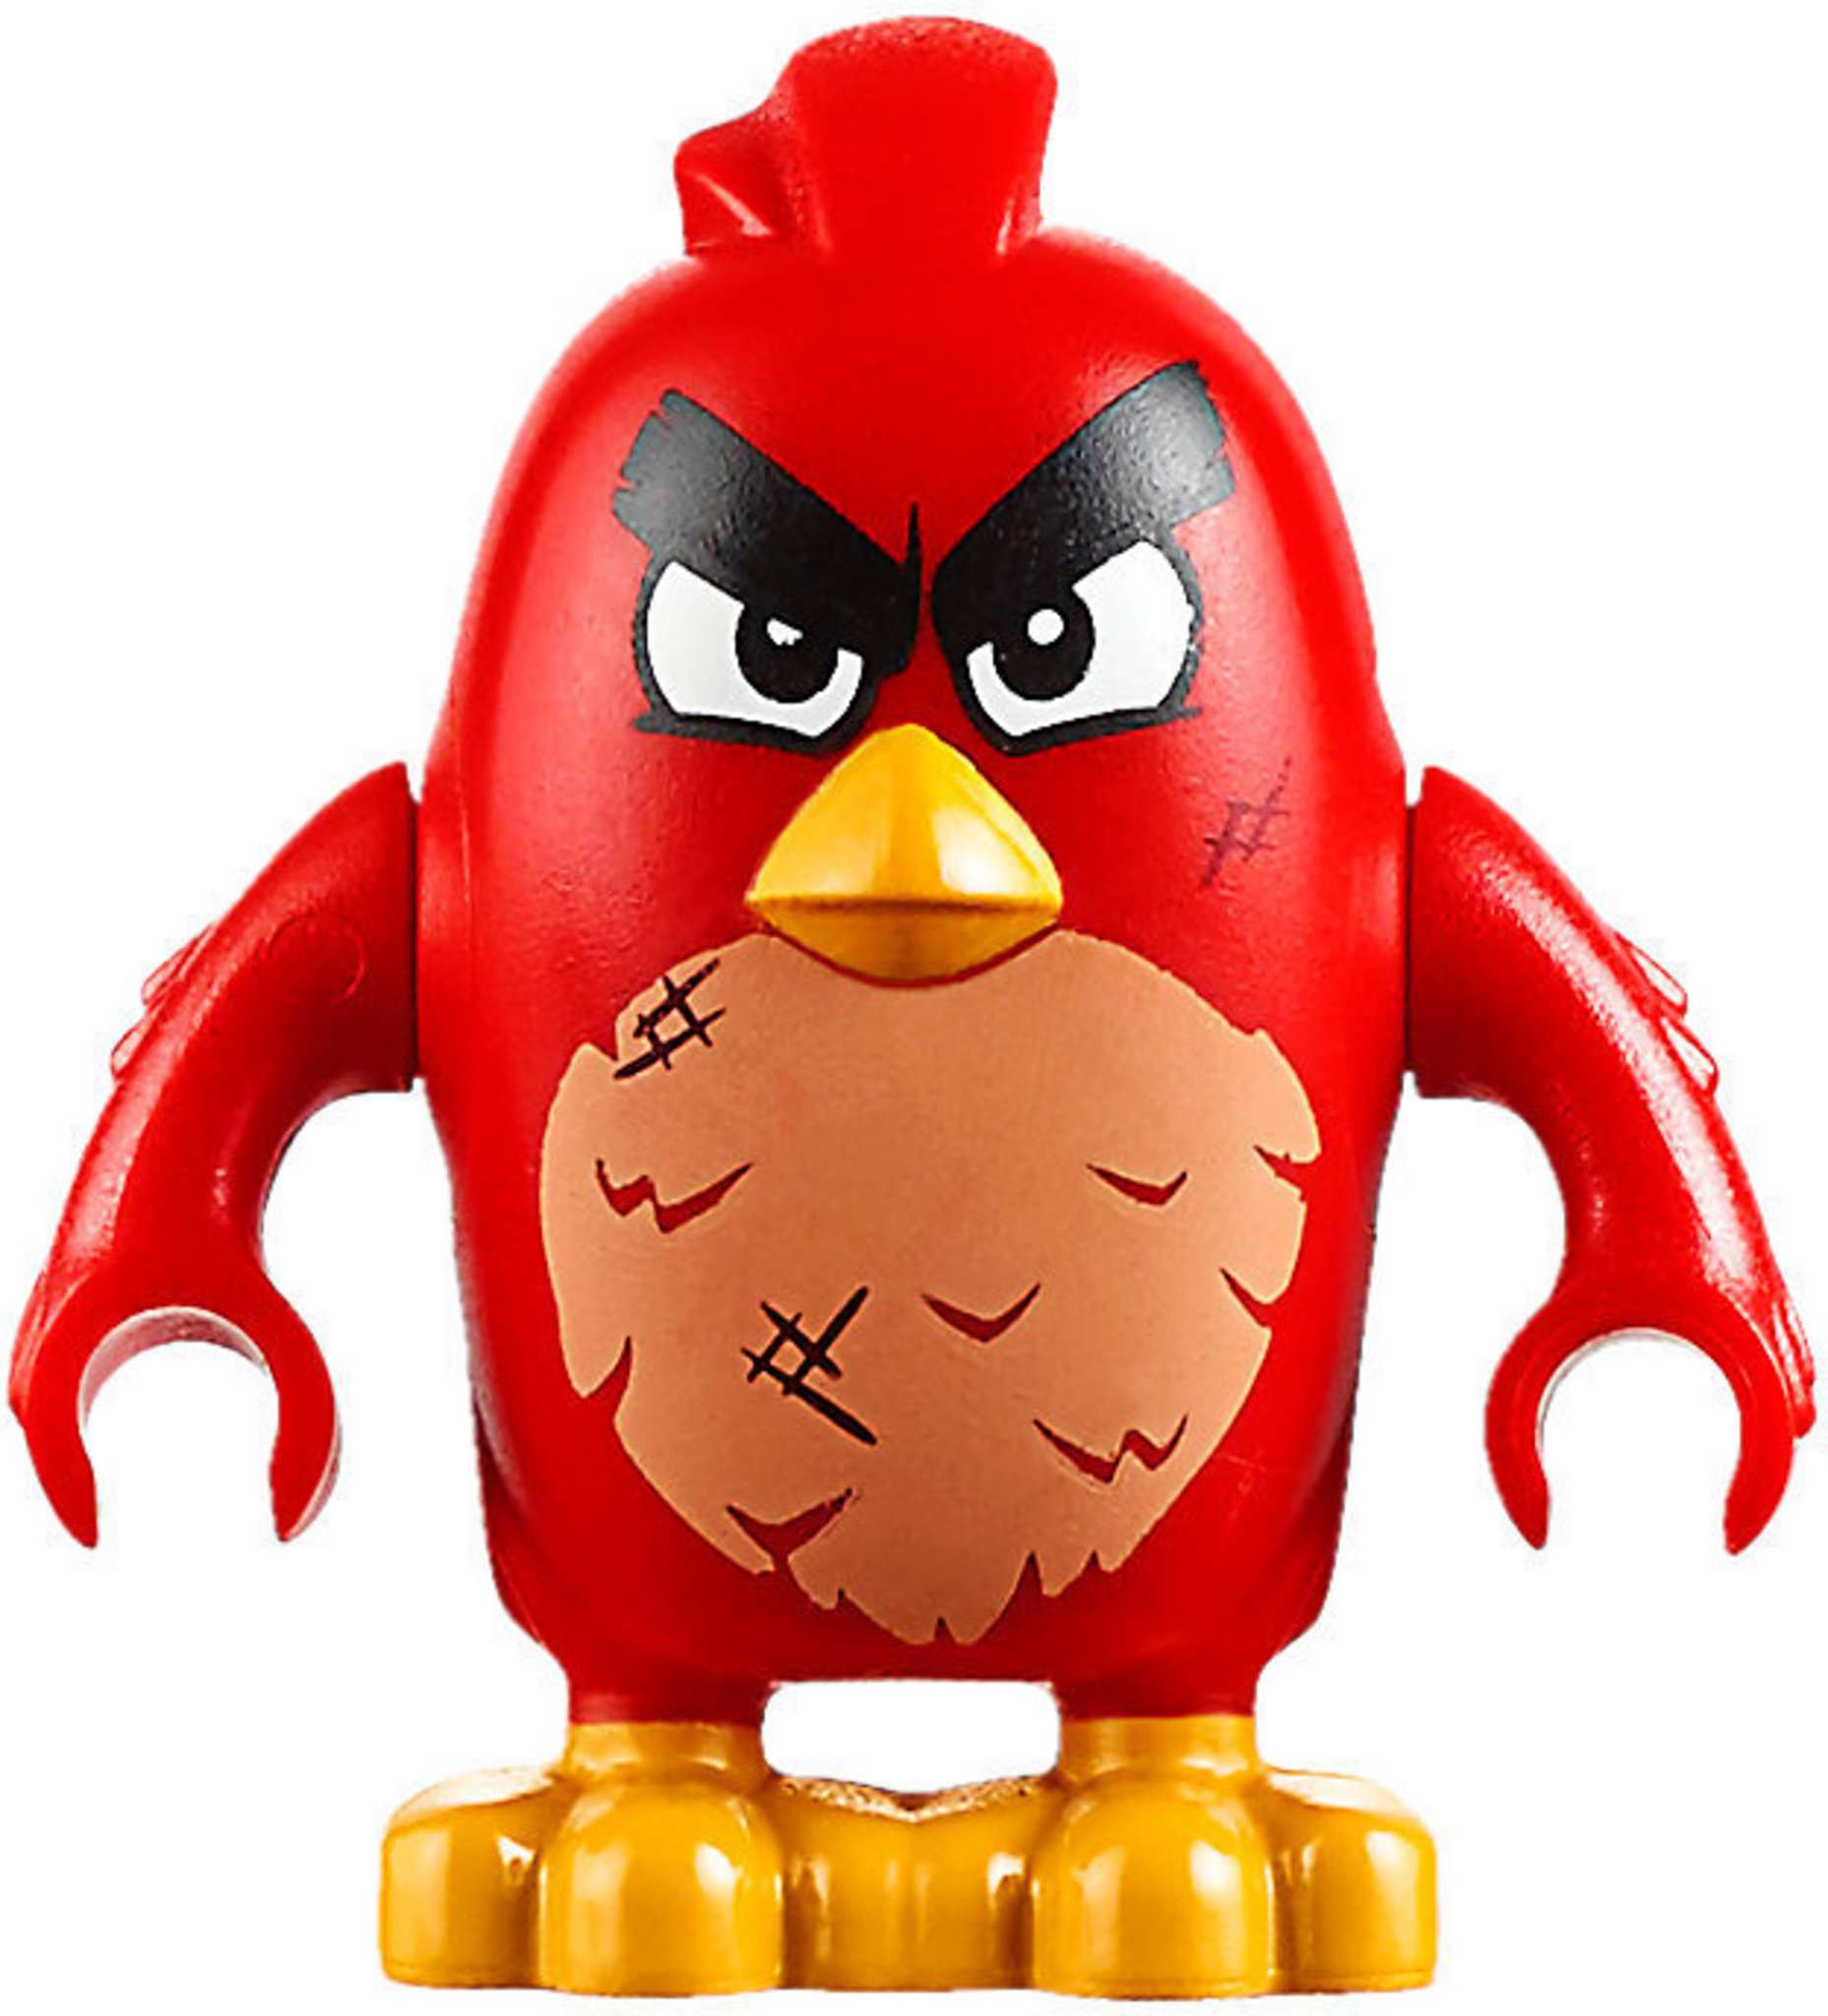 NUOVO Angry Birds LEGO MOVIE Piggy MINIFIGURES X2 75824 Maiale CITTA 'DI RIPRISTINO 